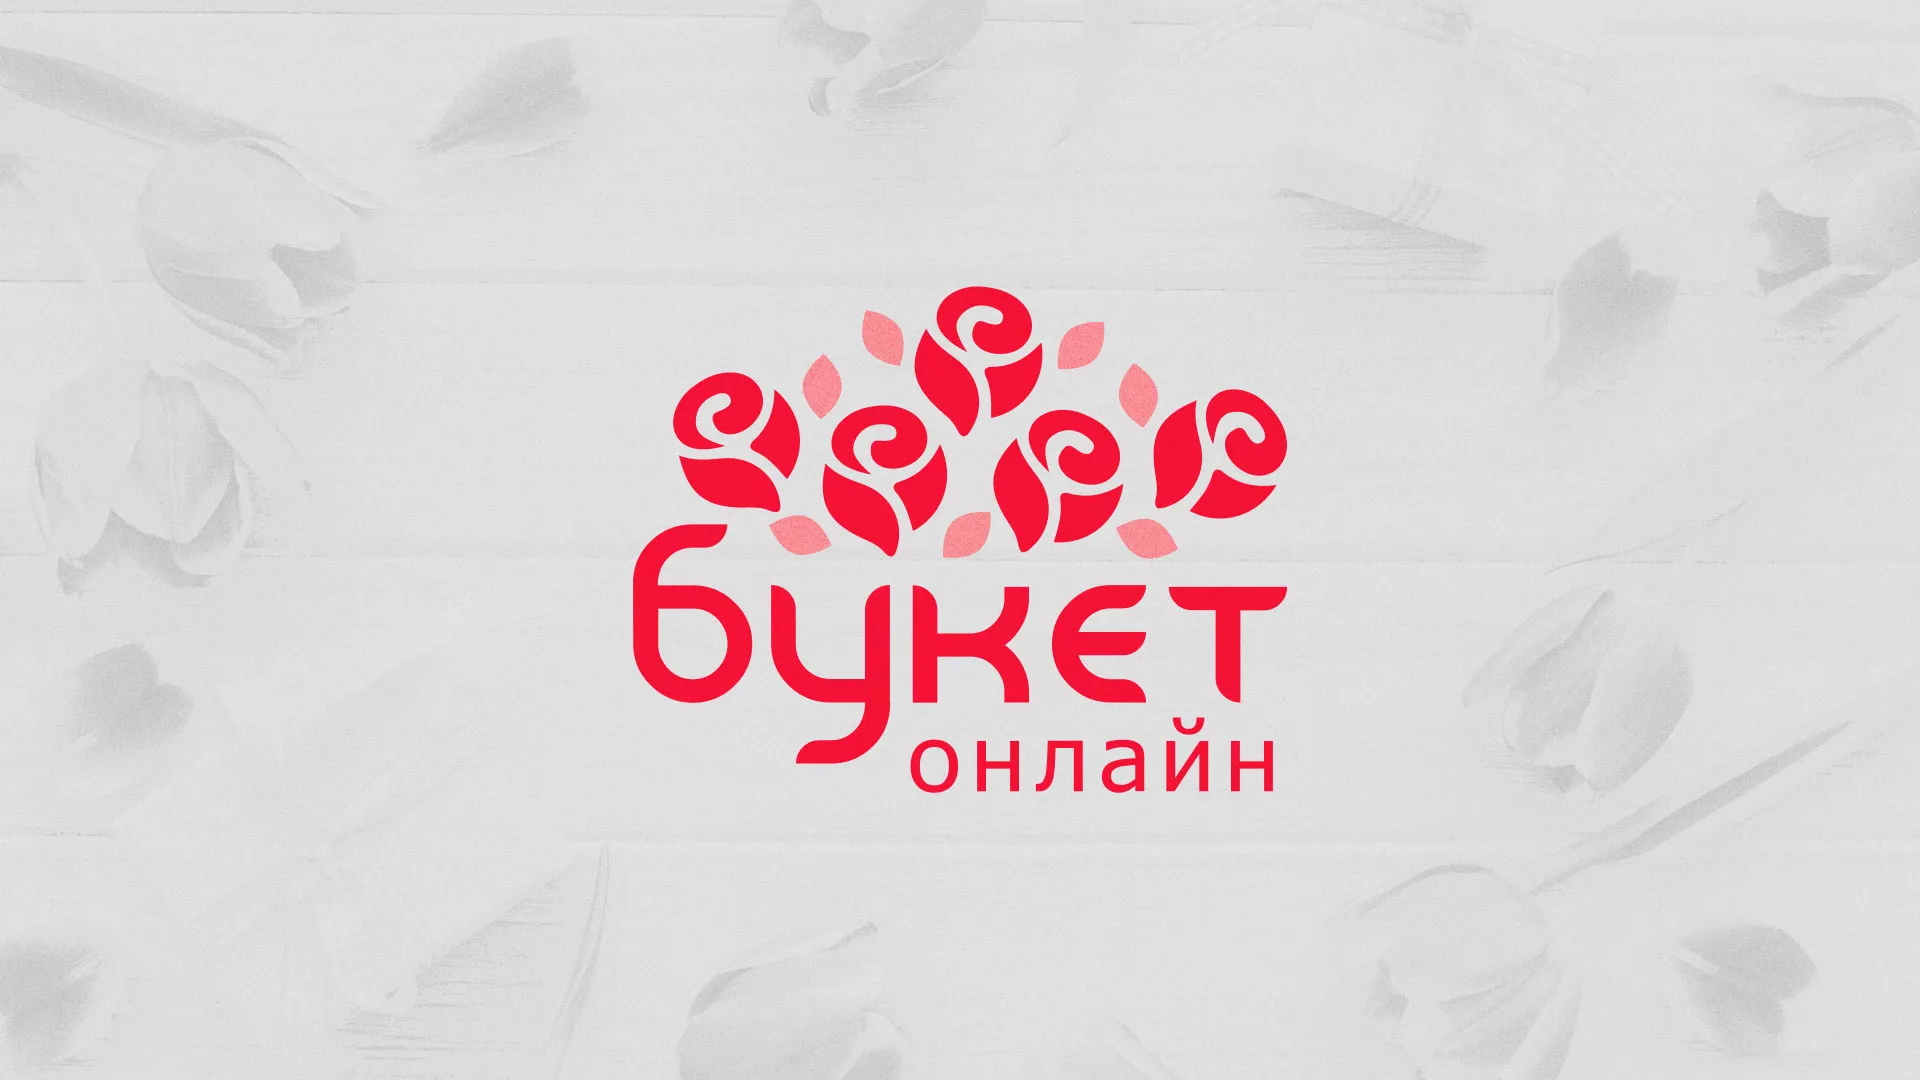 Создание интернет-магазина «Букет-онлайн» по цветам в Твери